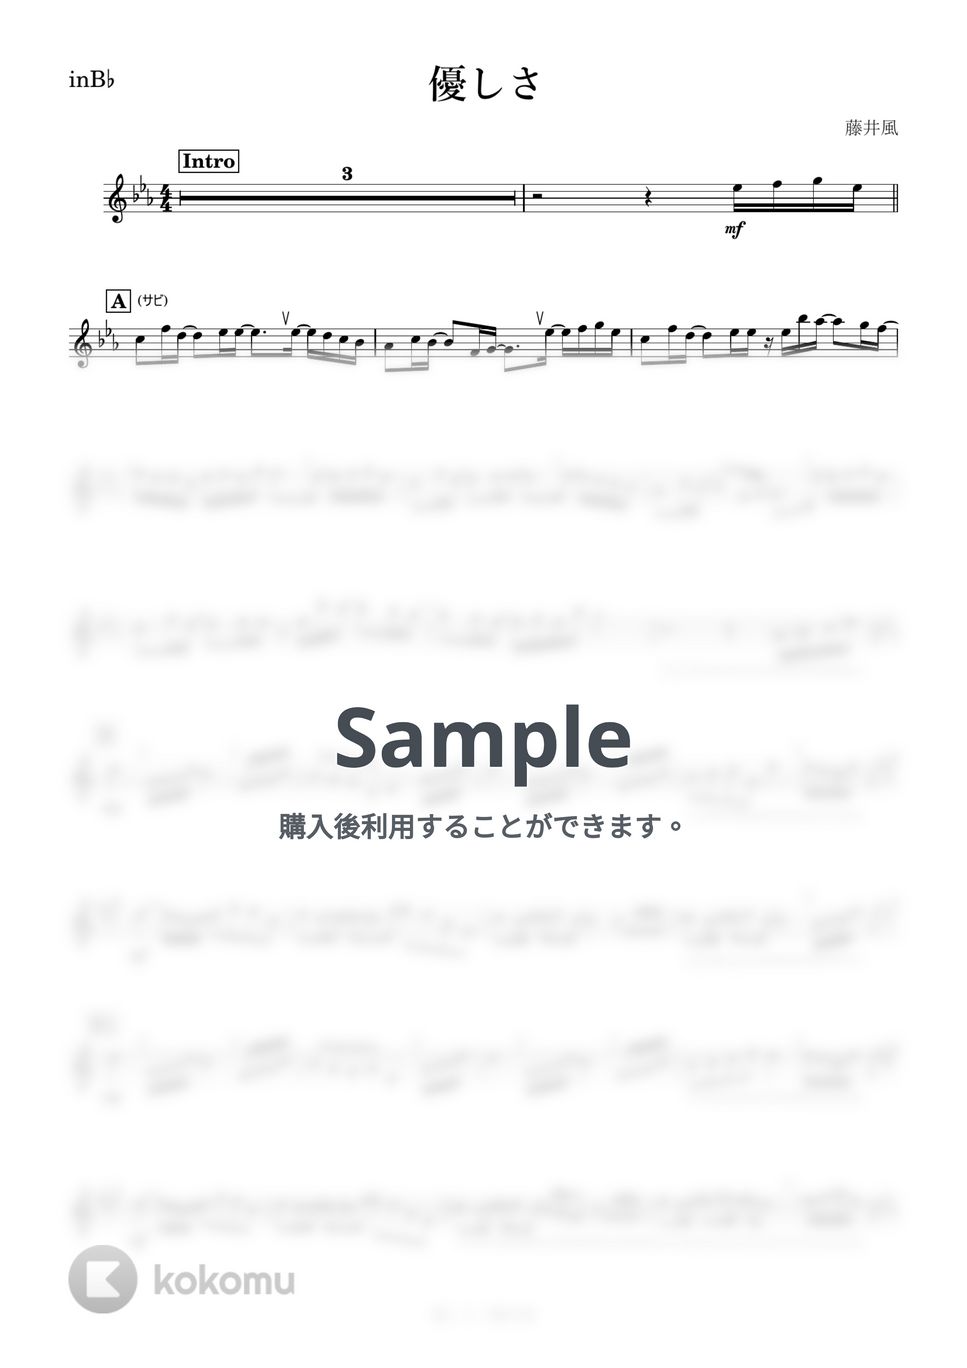 藤井風 - 優しさ (B♭) by kanamusic